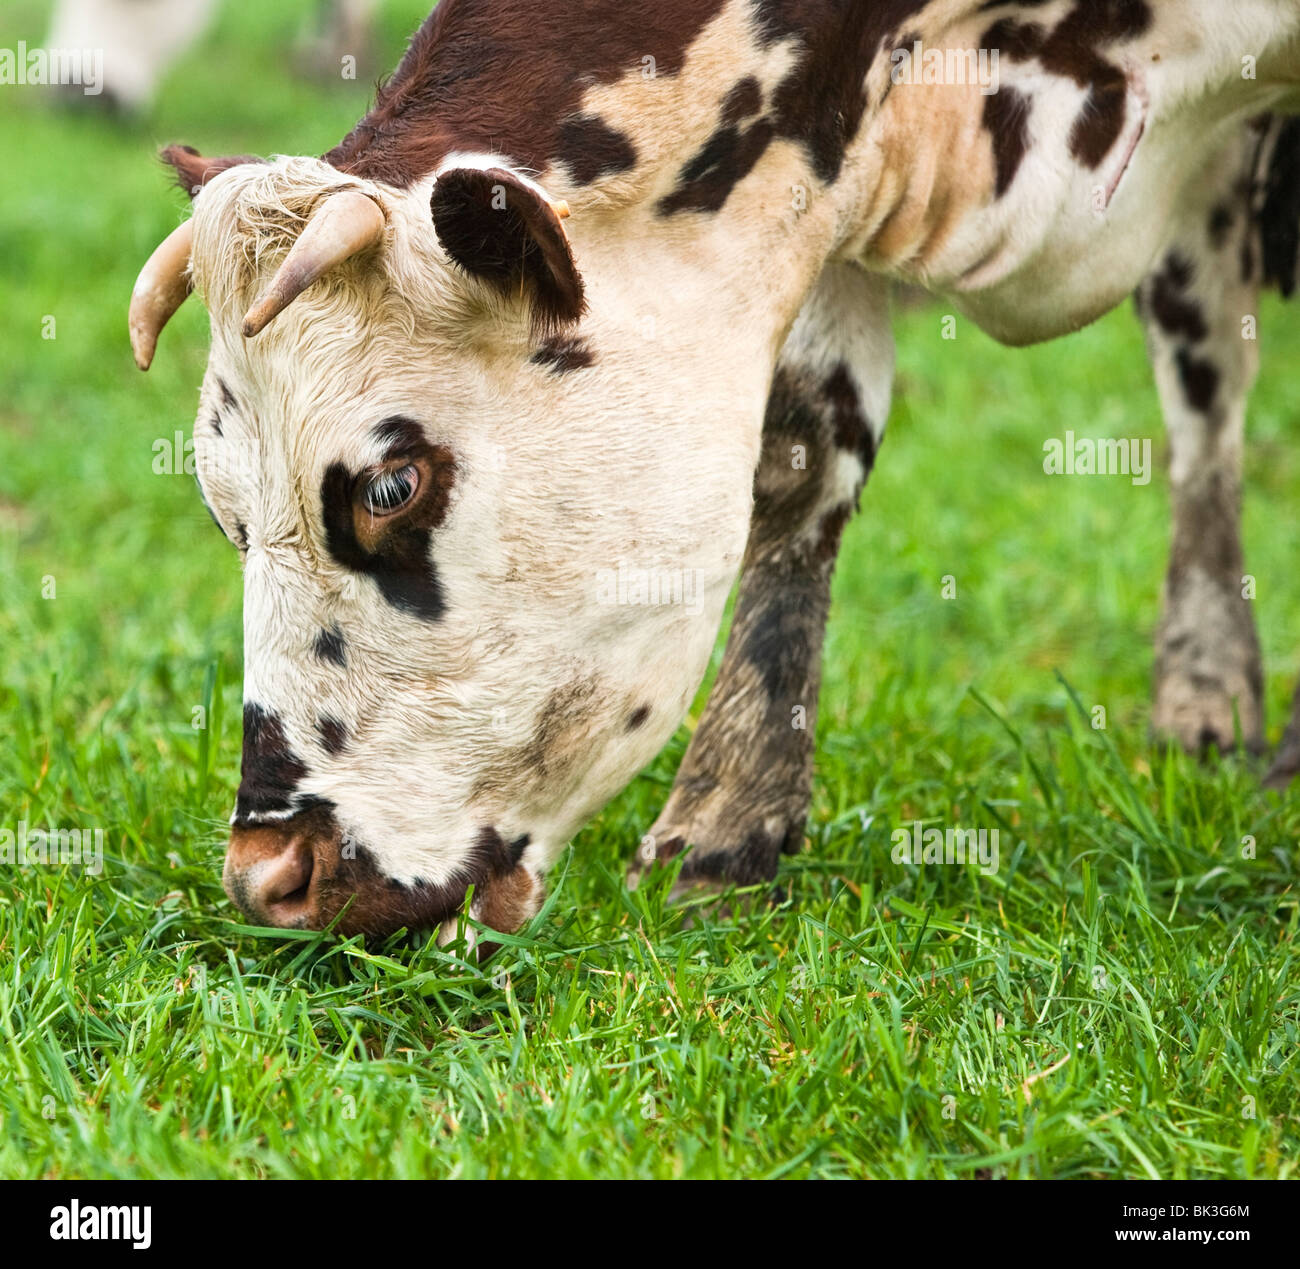 Vache normande le pâturage dans un champ en France Banque D'Images